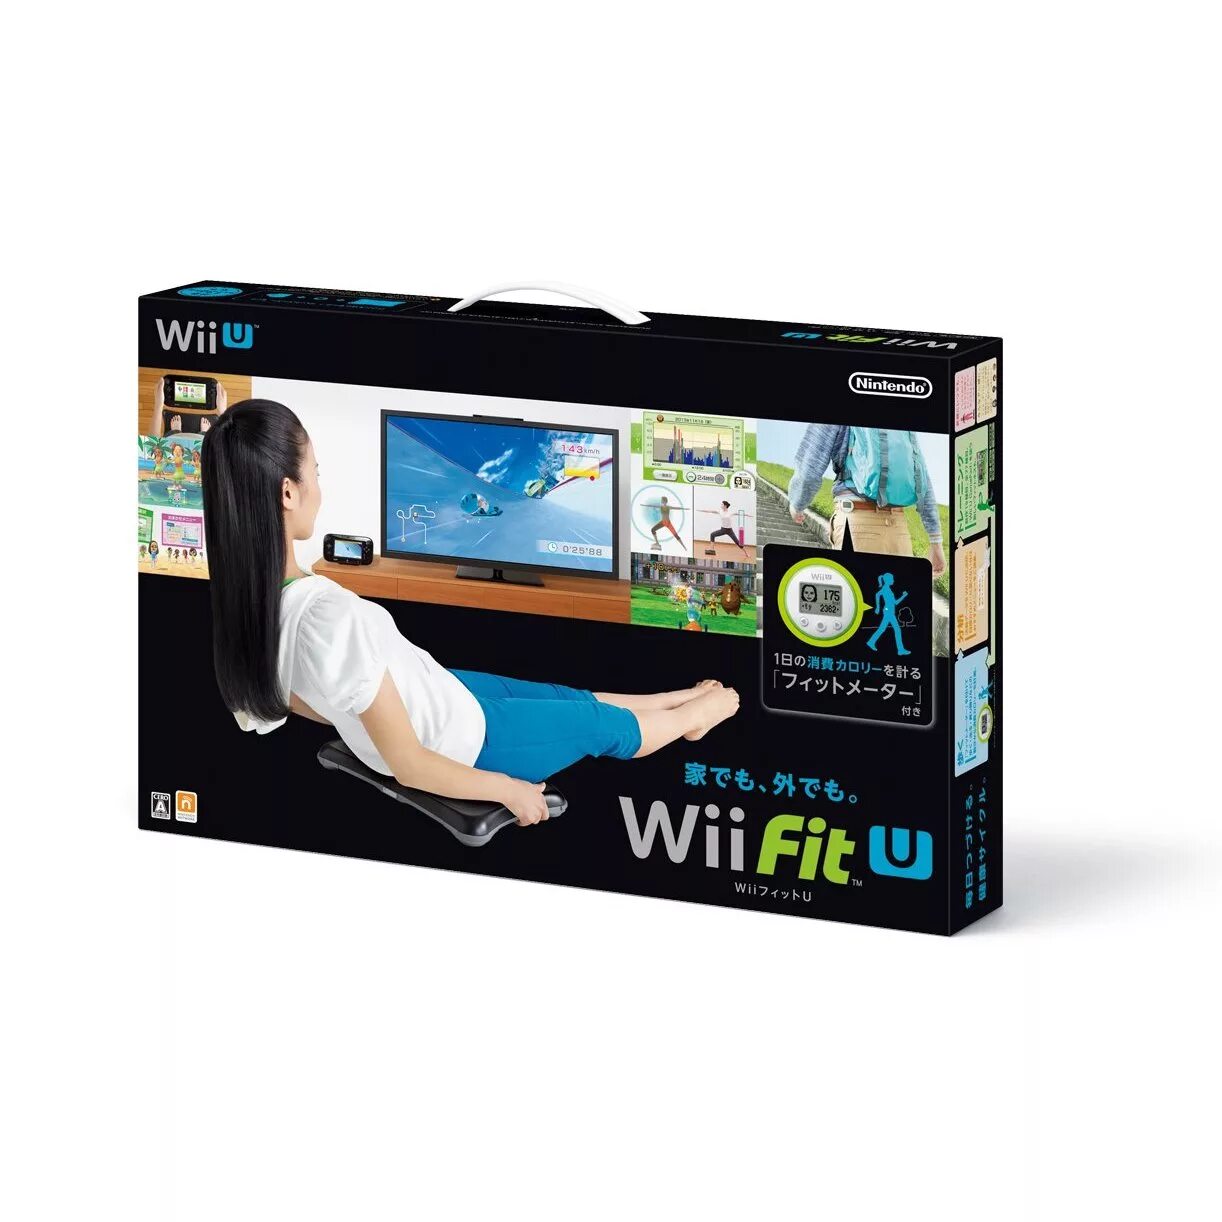 Wii Fit u. Wii Fit u Wii. Wii u Bundle Fit. Wii Balance Board.